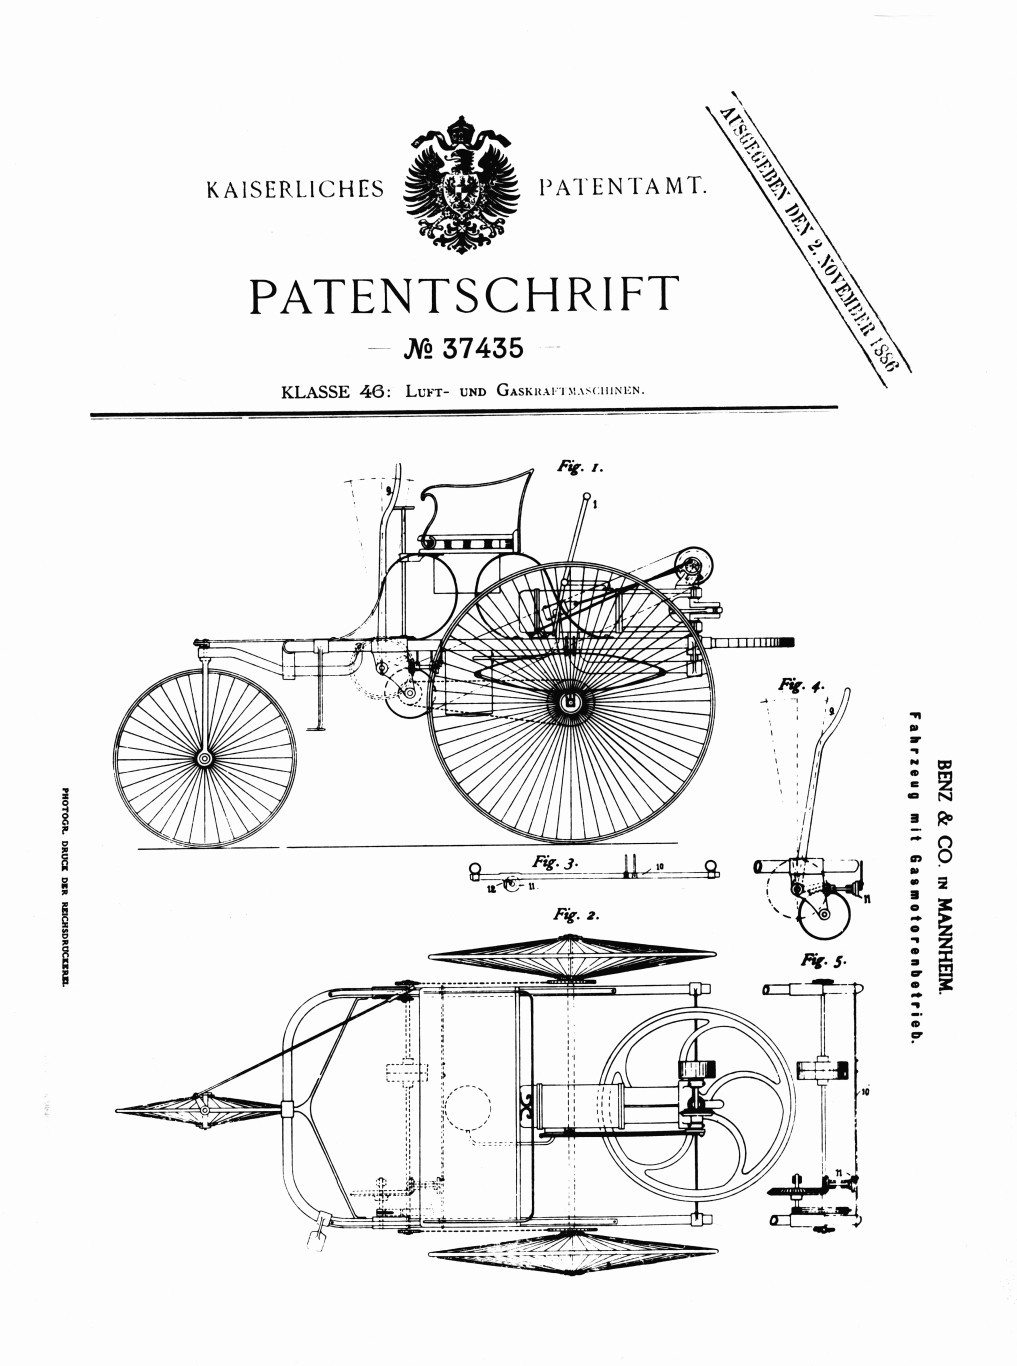 Benz-Patent-Motorwagen-2